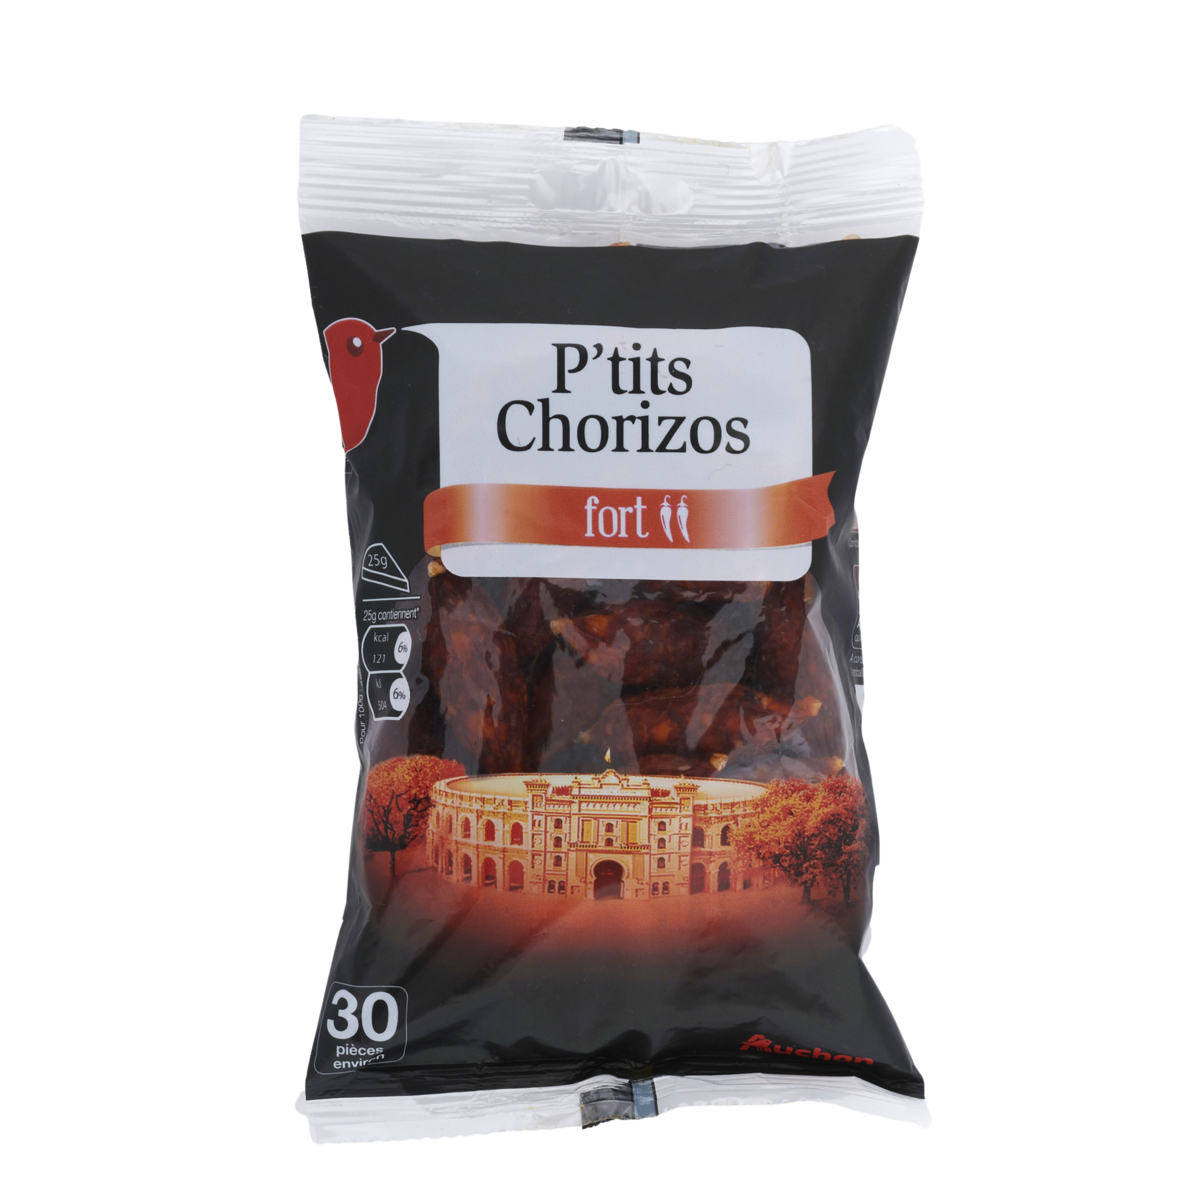 AUCHAN P'tits Chorizos fort 200g